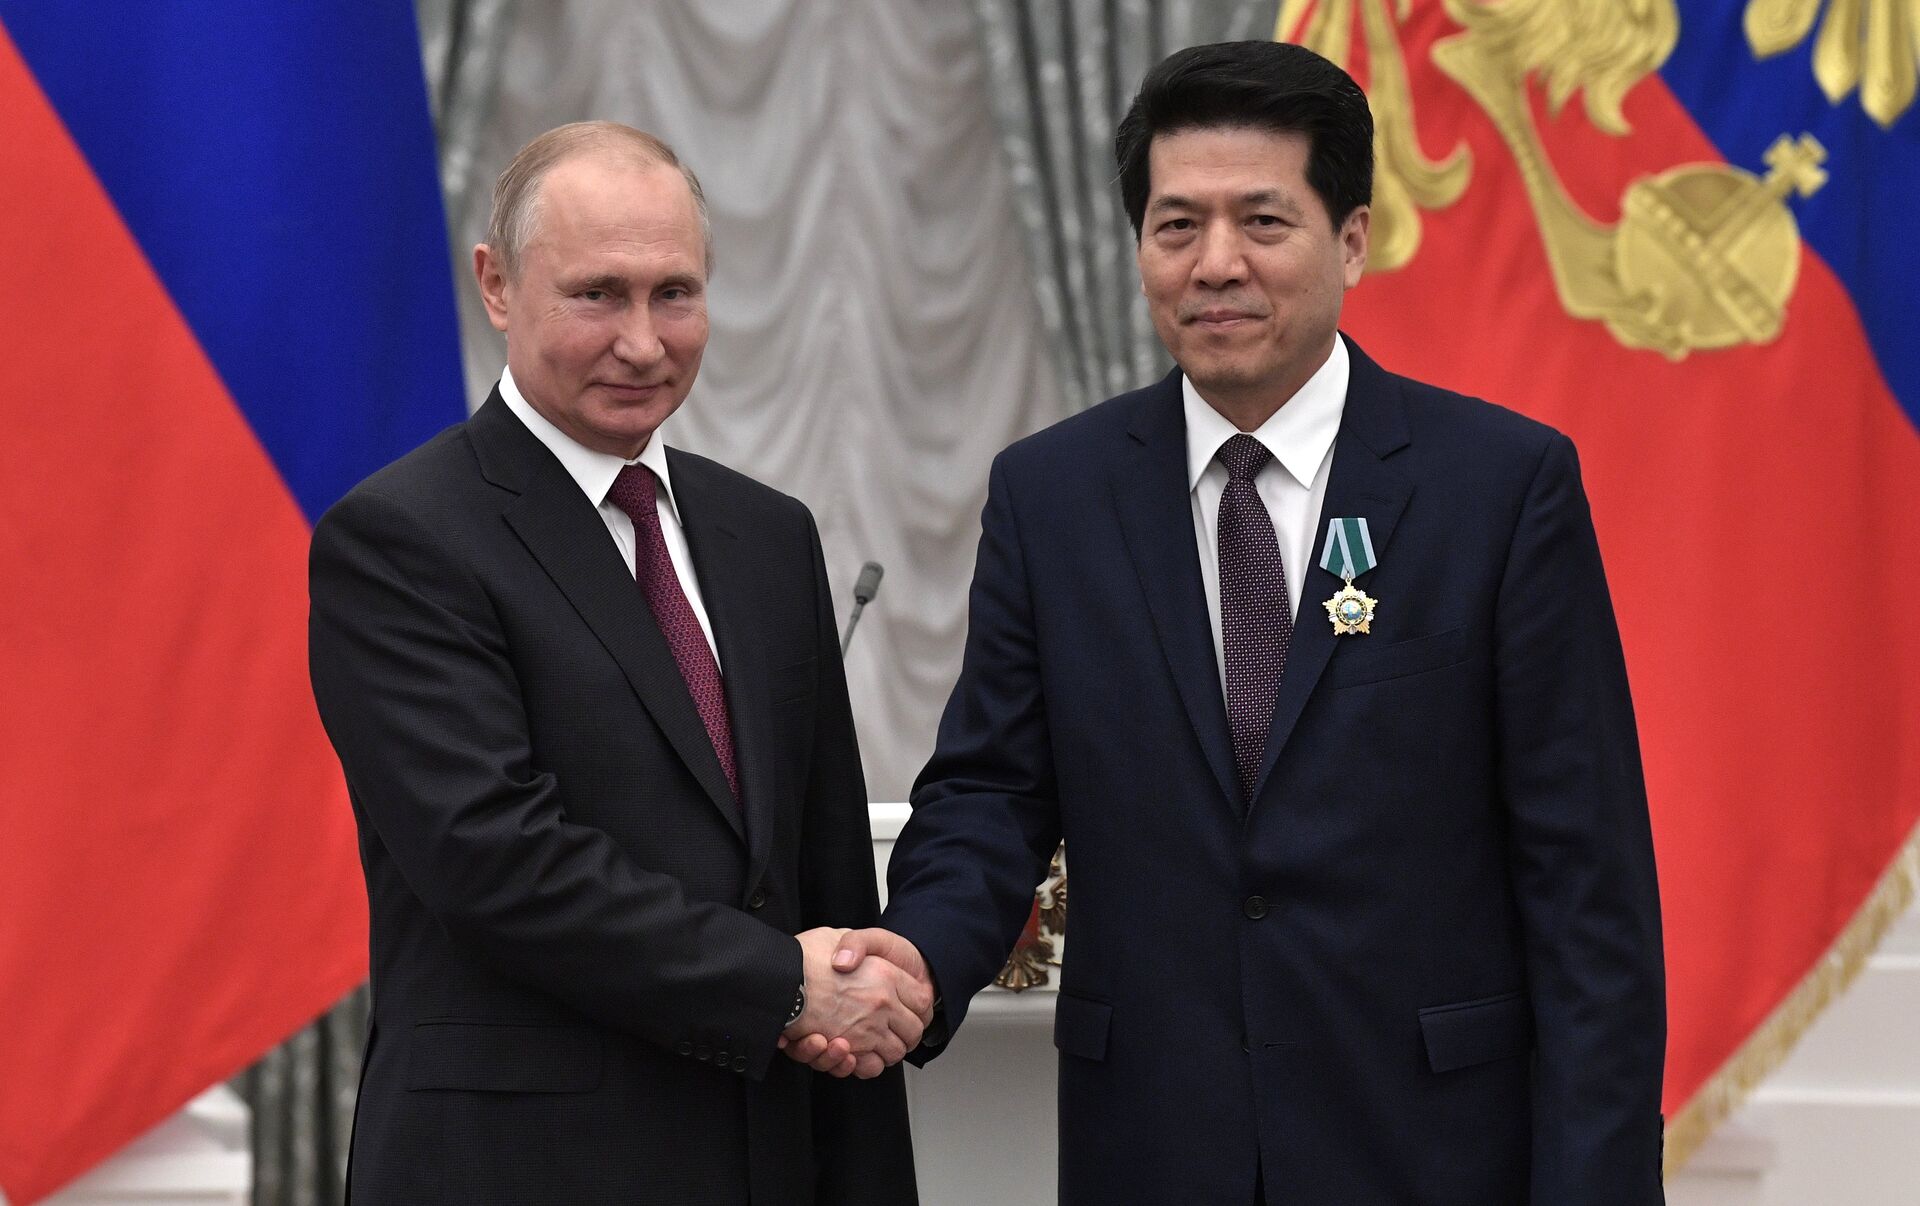 俄罗斯总统普京荣获首枚中国国家级最高荣誉勋章 - 2018年6月8日, 俄罗斯卫星通讯社